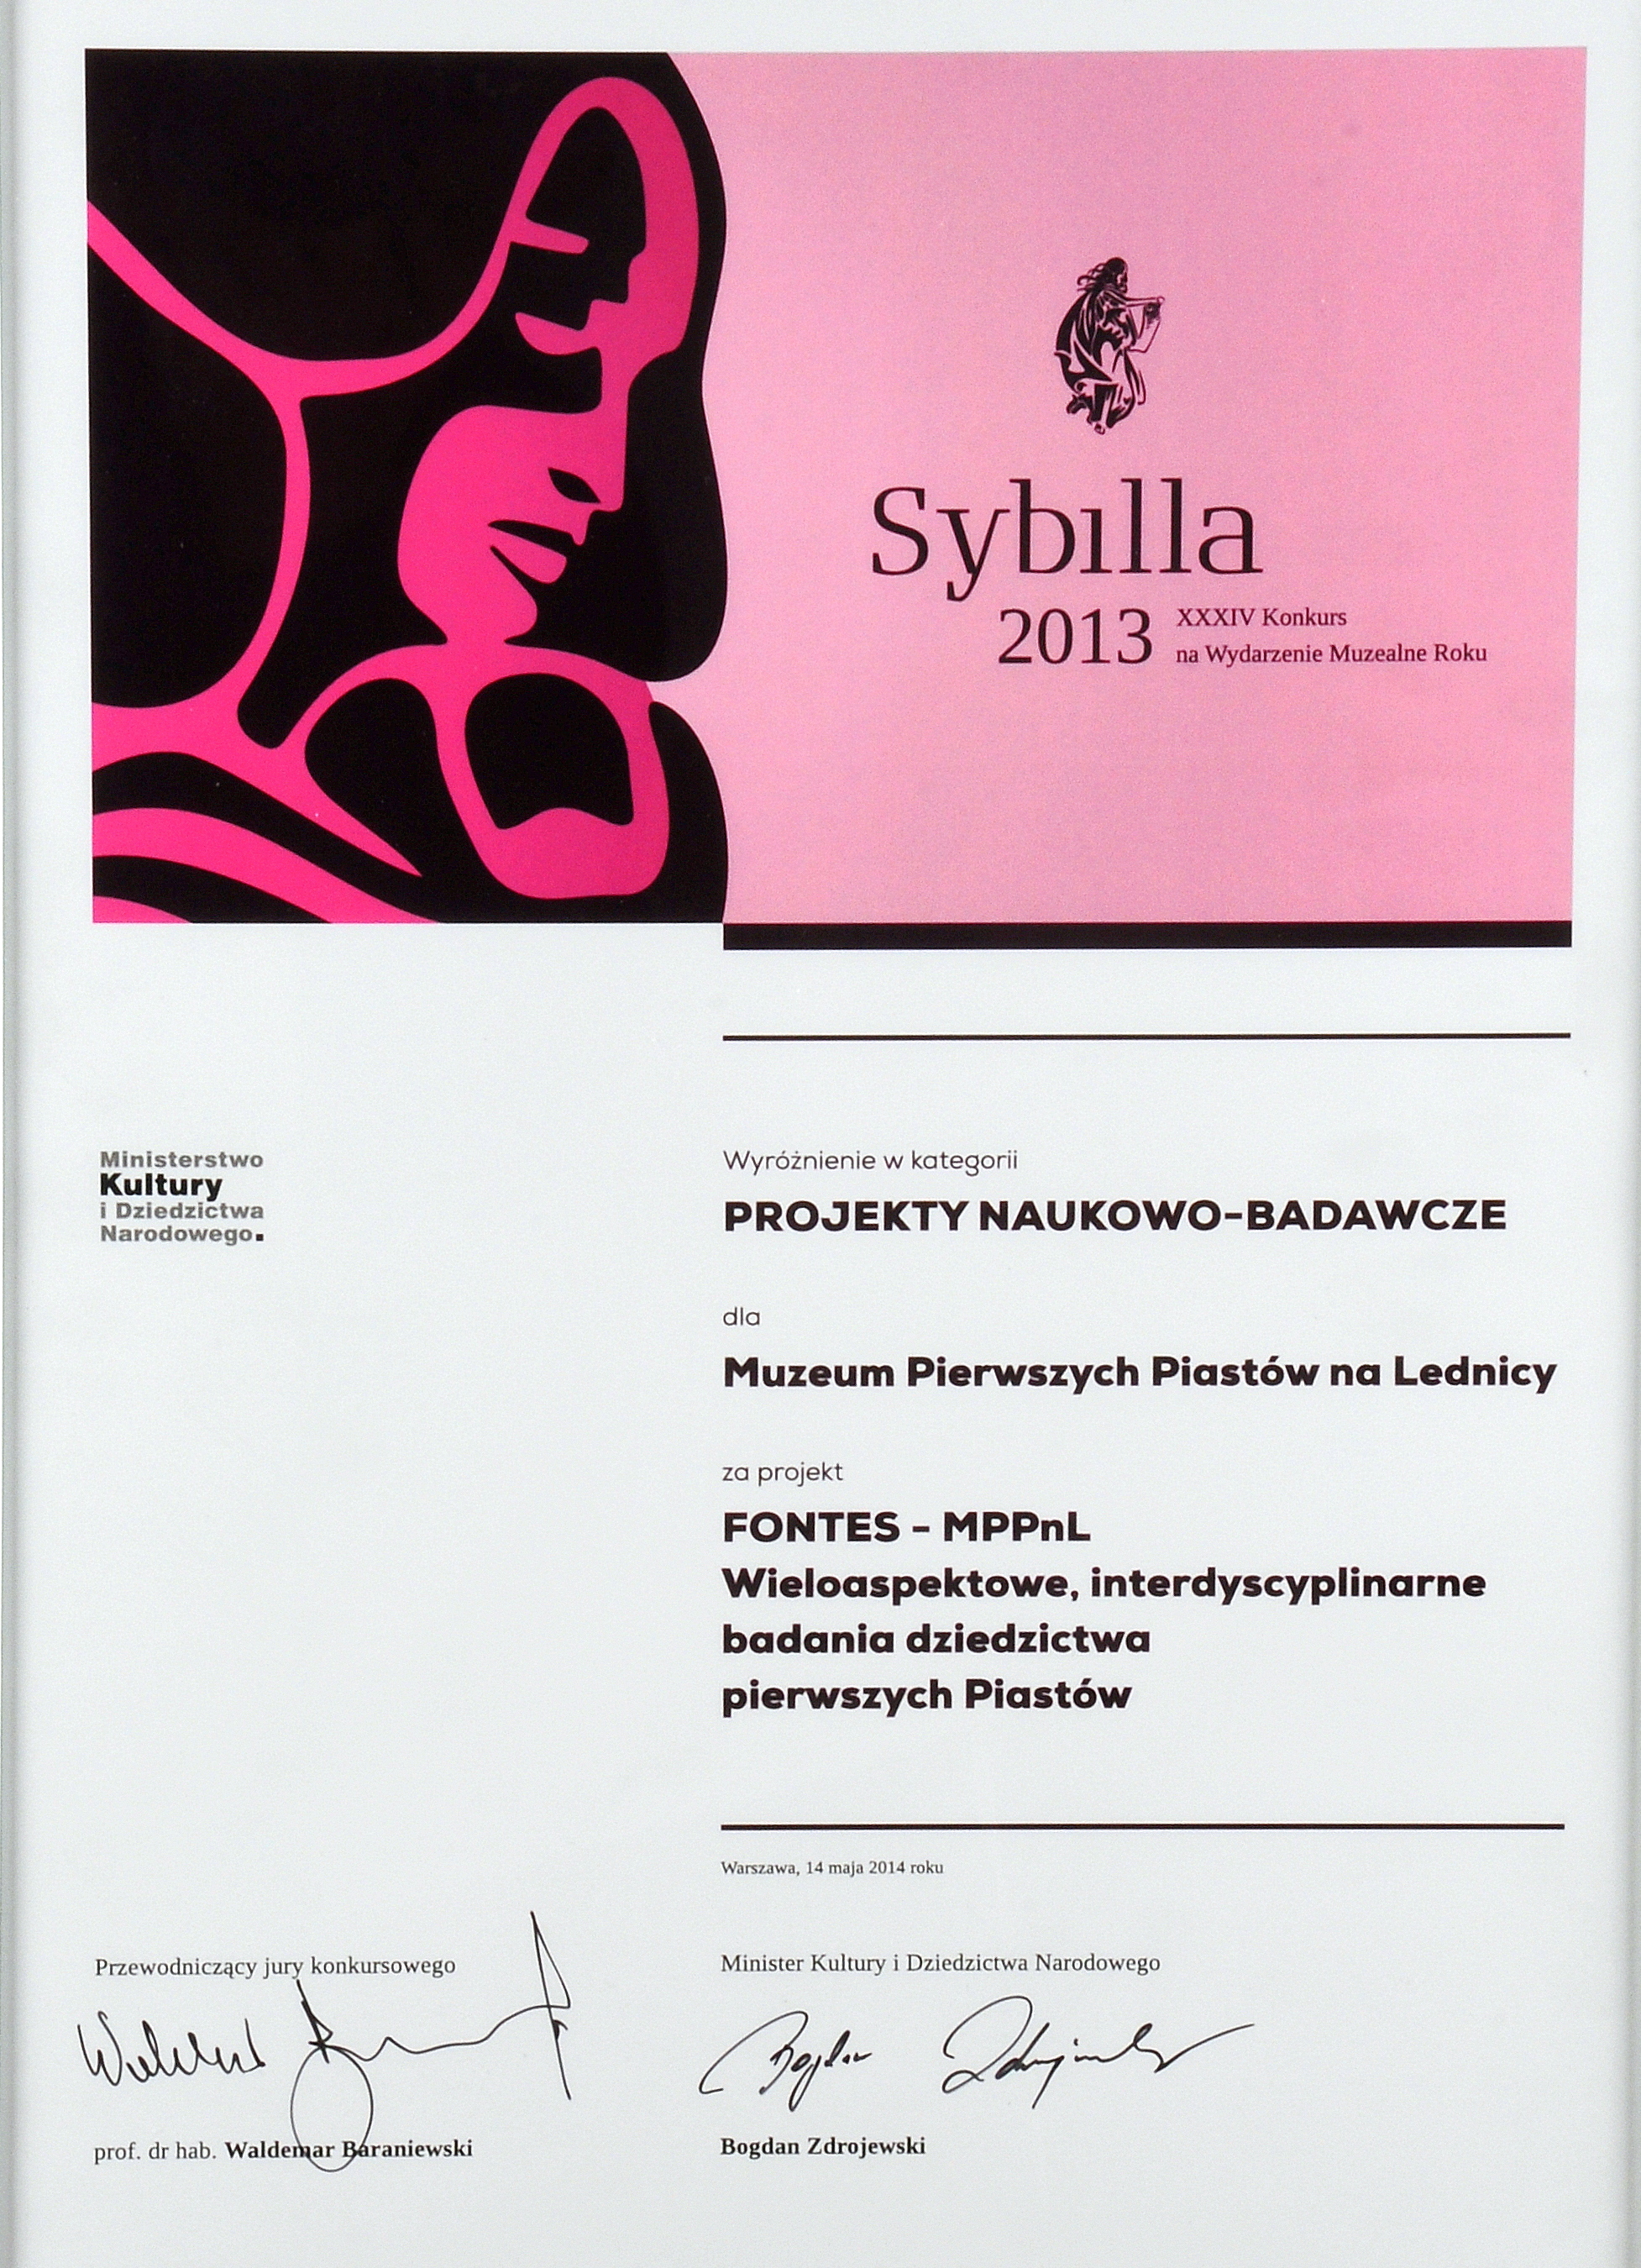 Dyplom w kolorze różowym, a po lewej profil kobiety-logo nagrody Sybilla 